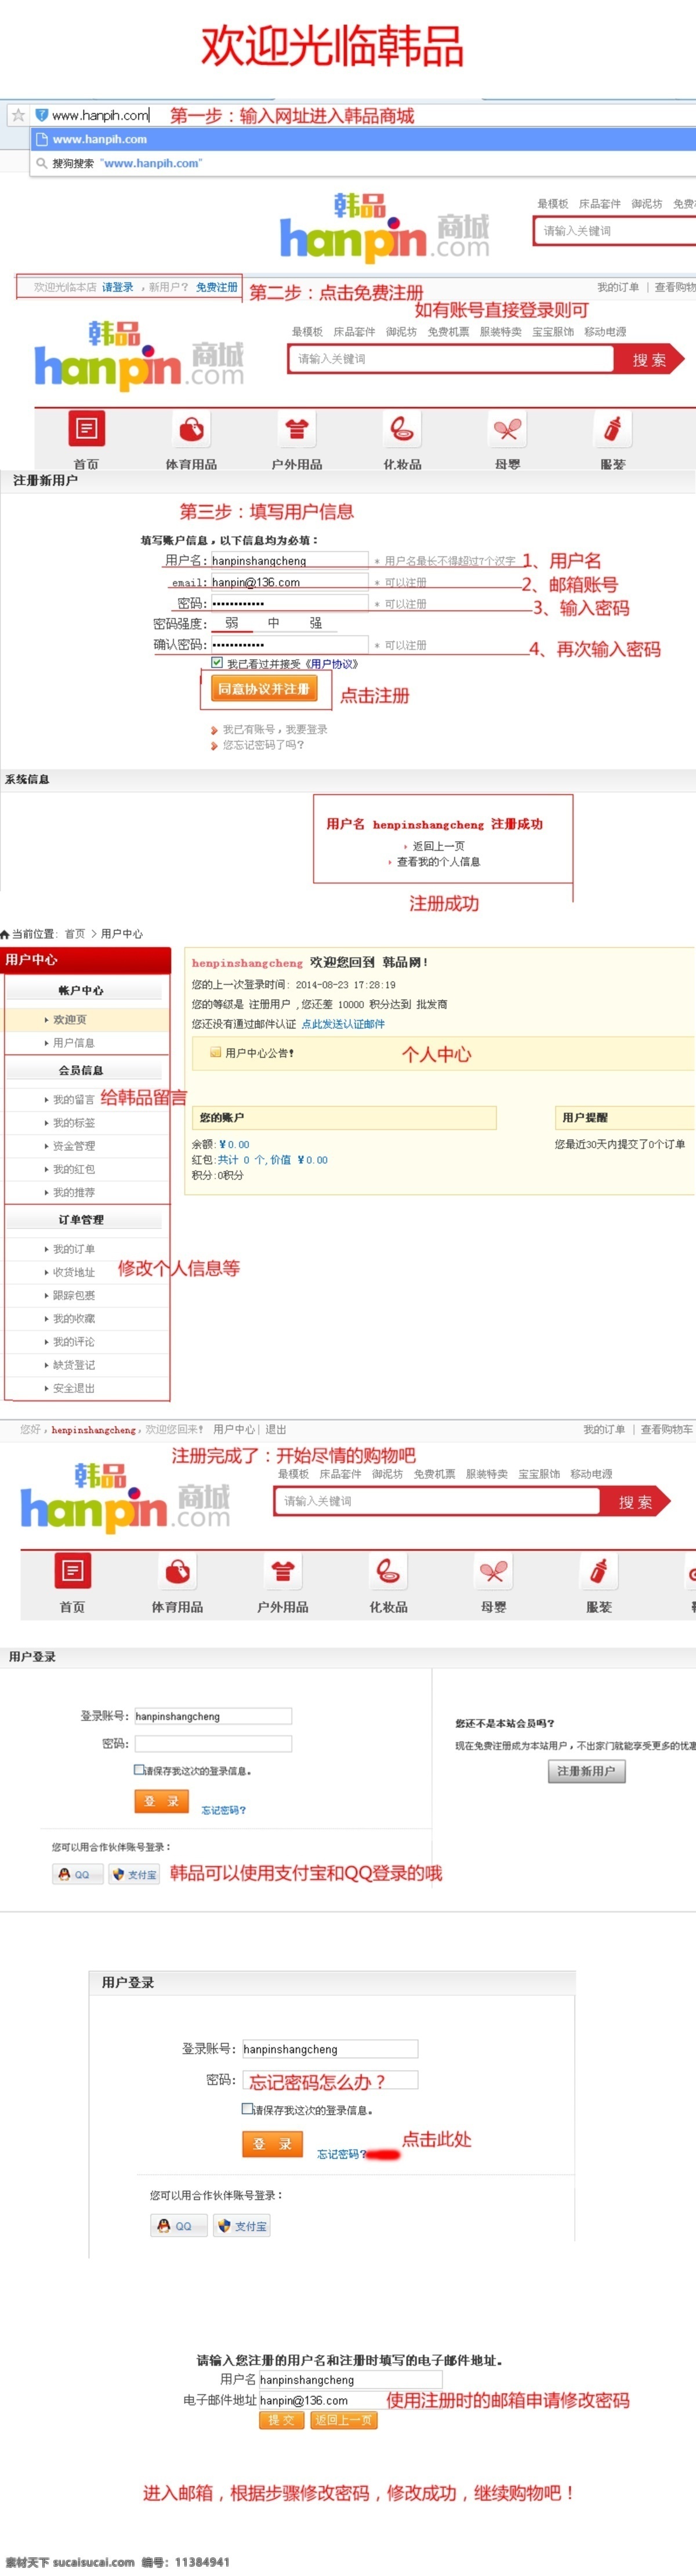 韩 品 商城 会员 注册 vip 登录 购物 韩国 红色 进口 蓝色 详情 会员注册 修改 注册流程 网页素材 网页模板